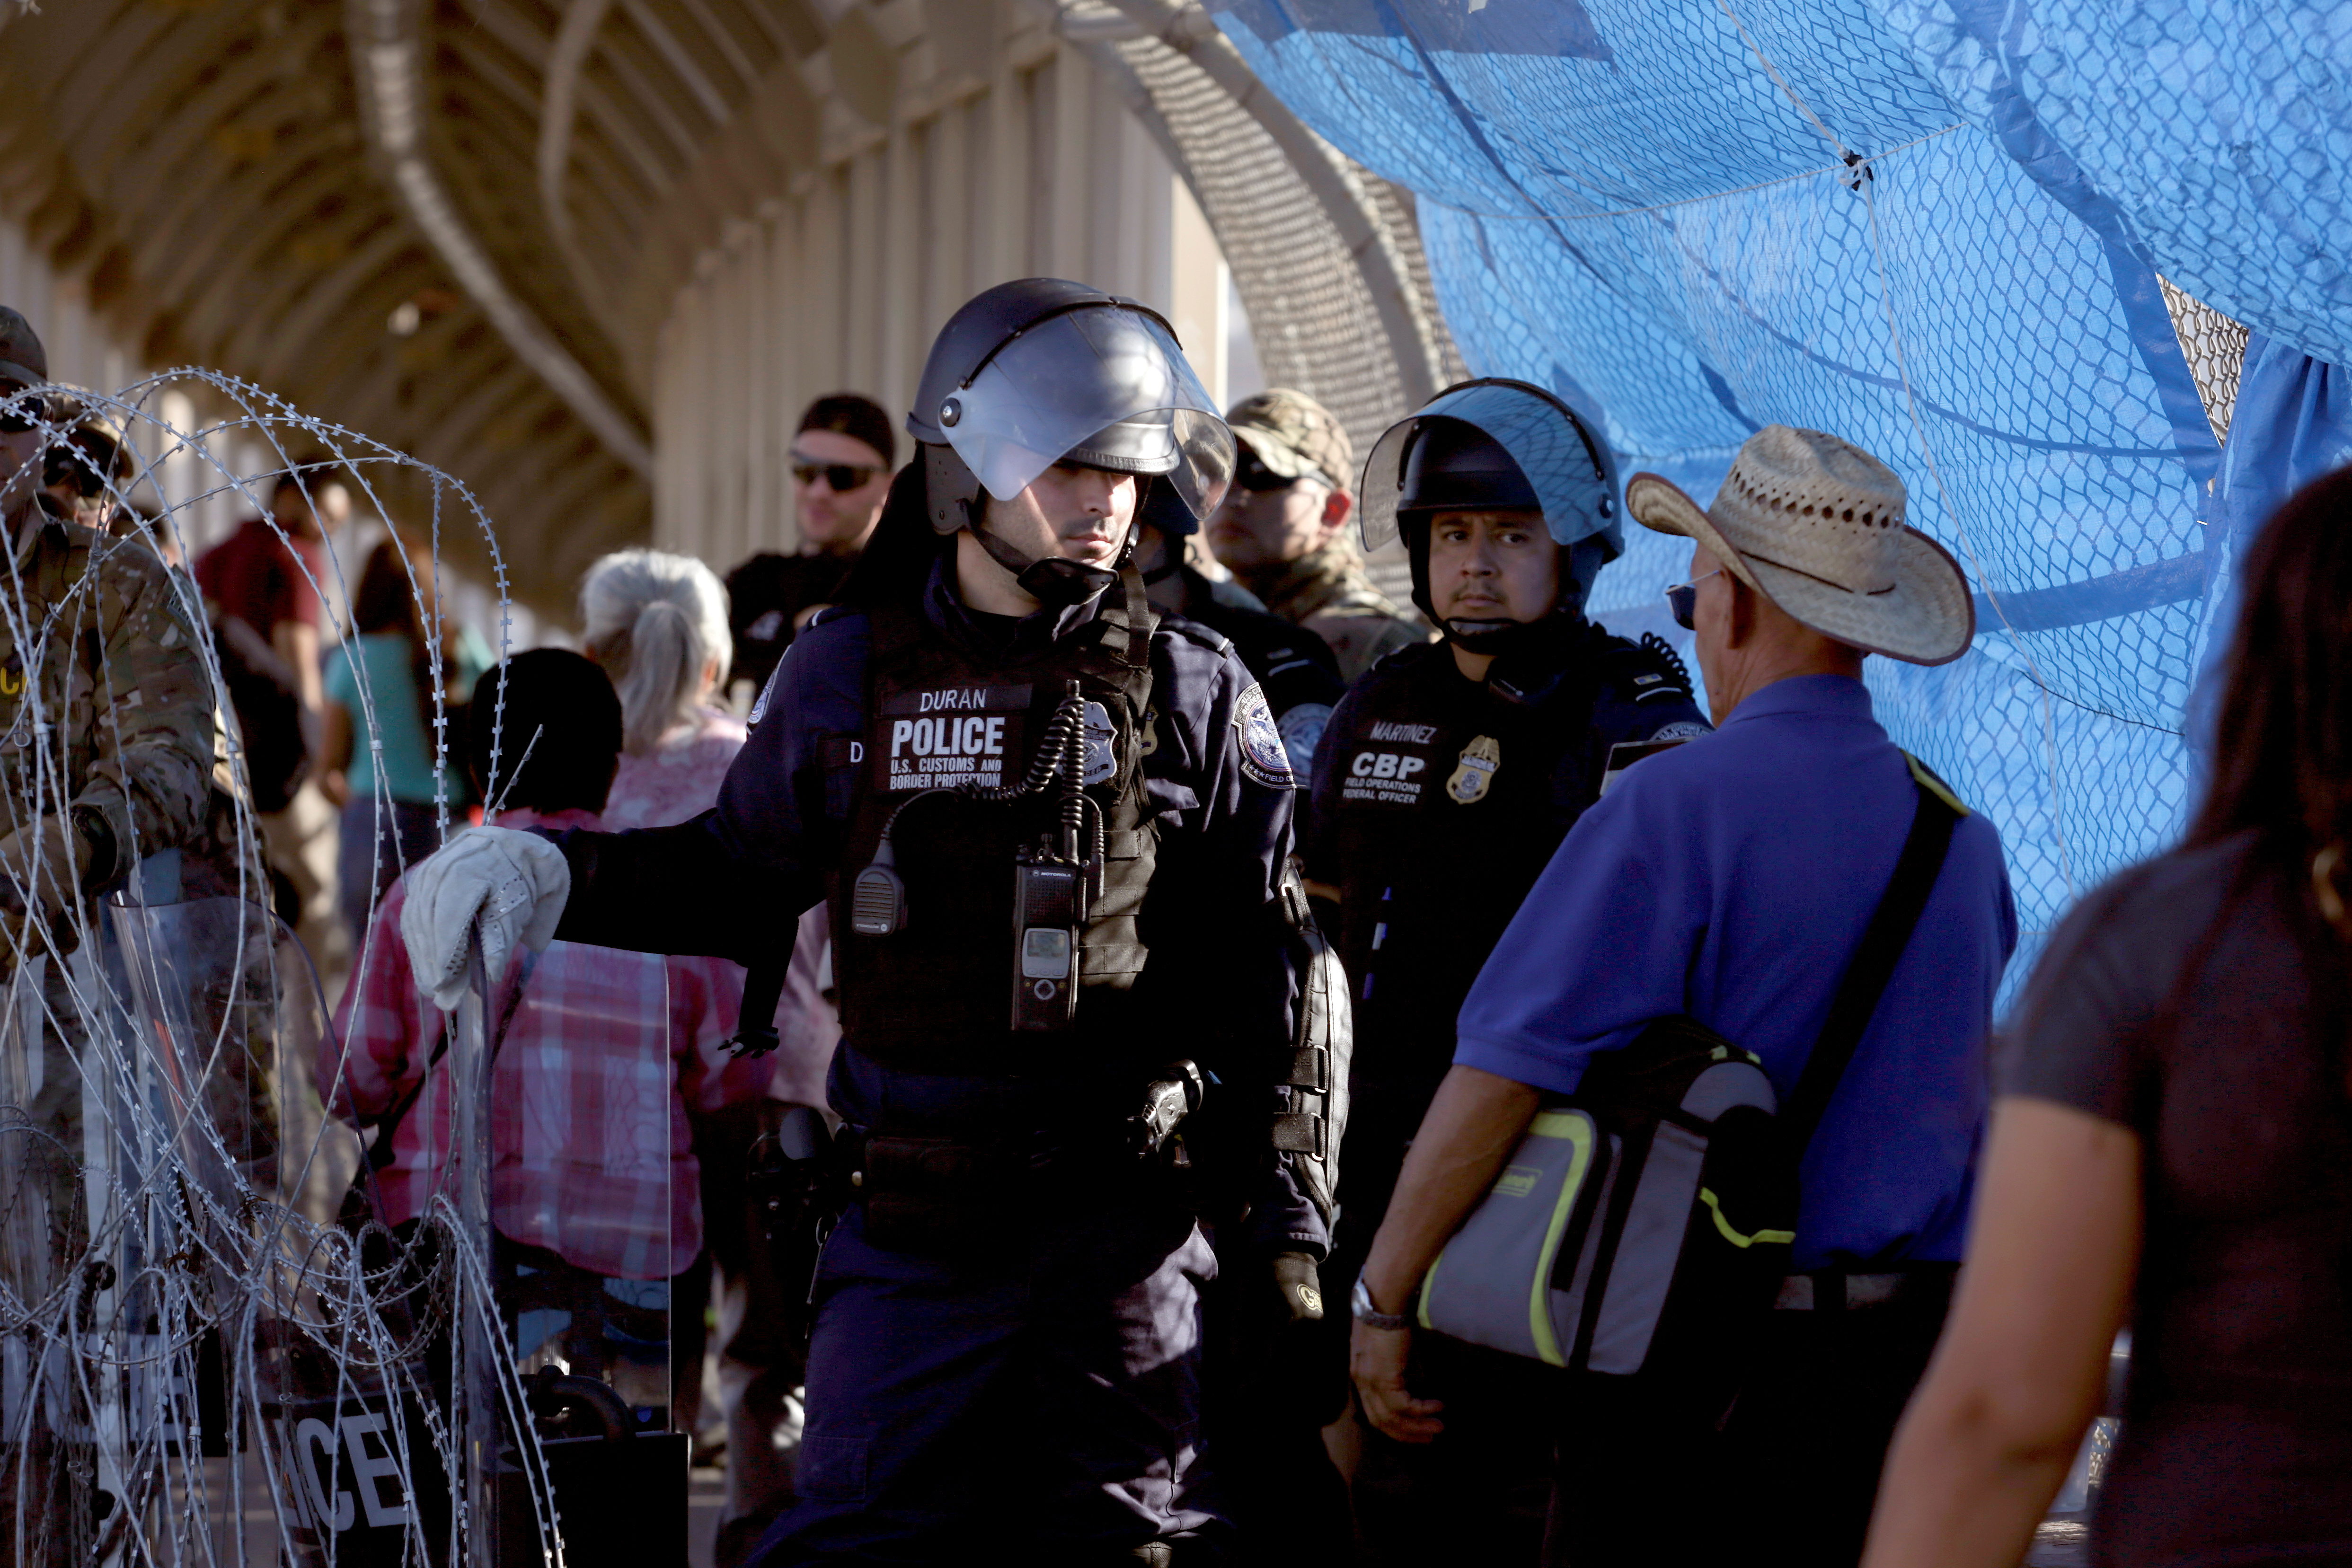 A CBP police member is seen at Paso del Norte border crossing bridge, as seen from Ciudad Juarez